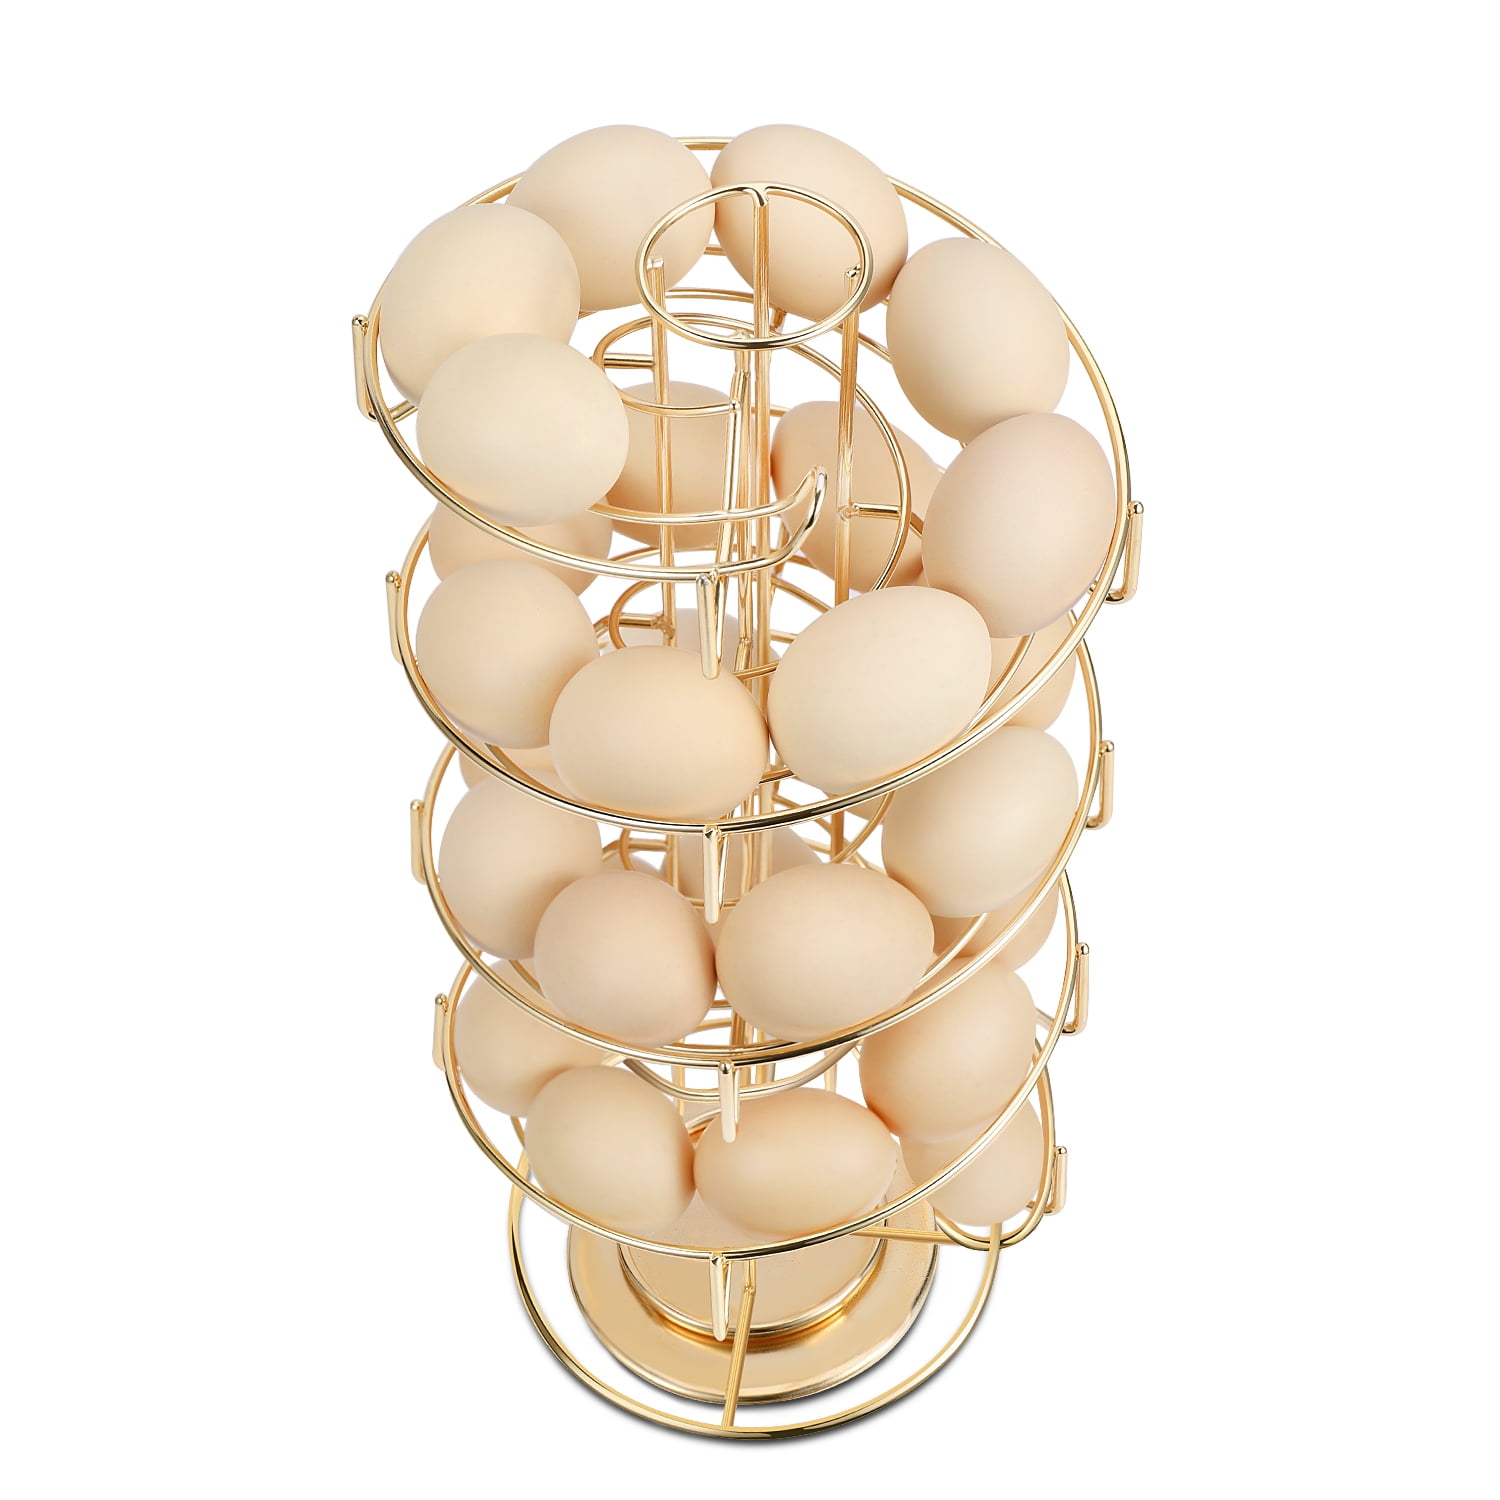 OBVIS Spiral Egg Skelter Dispenser … curated on LTK